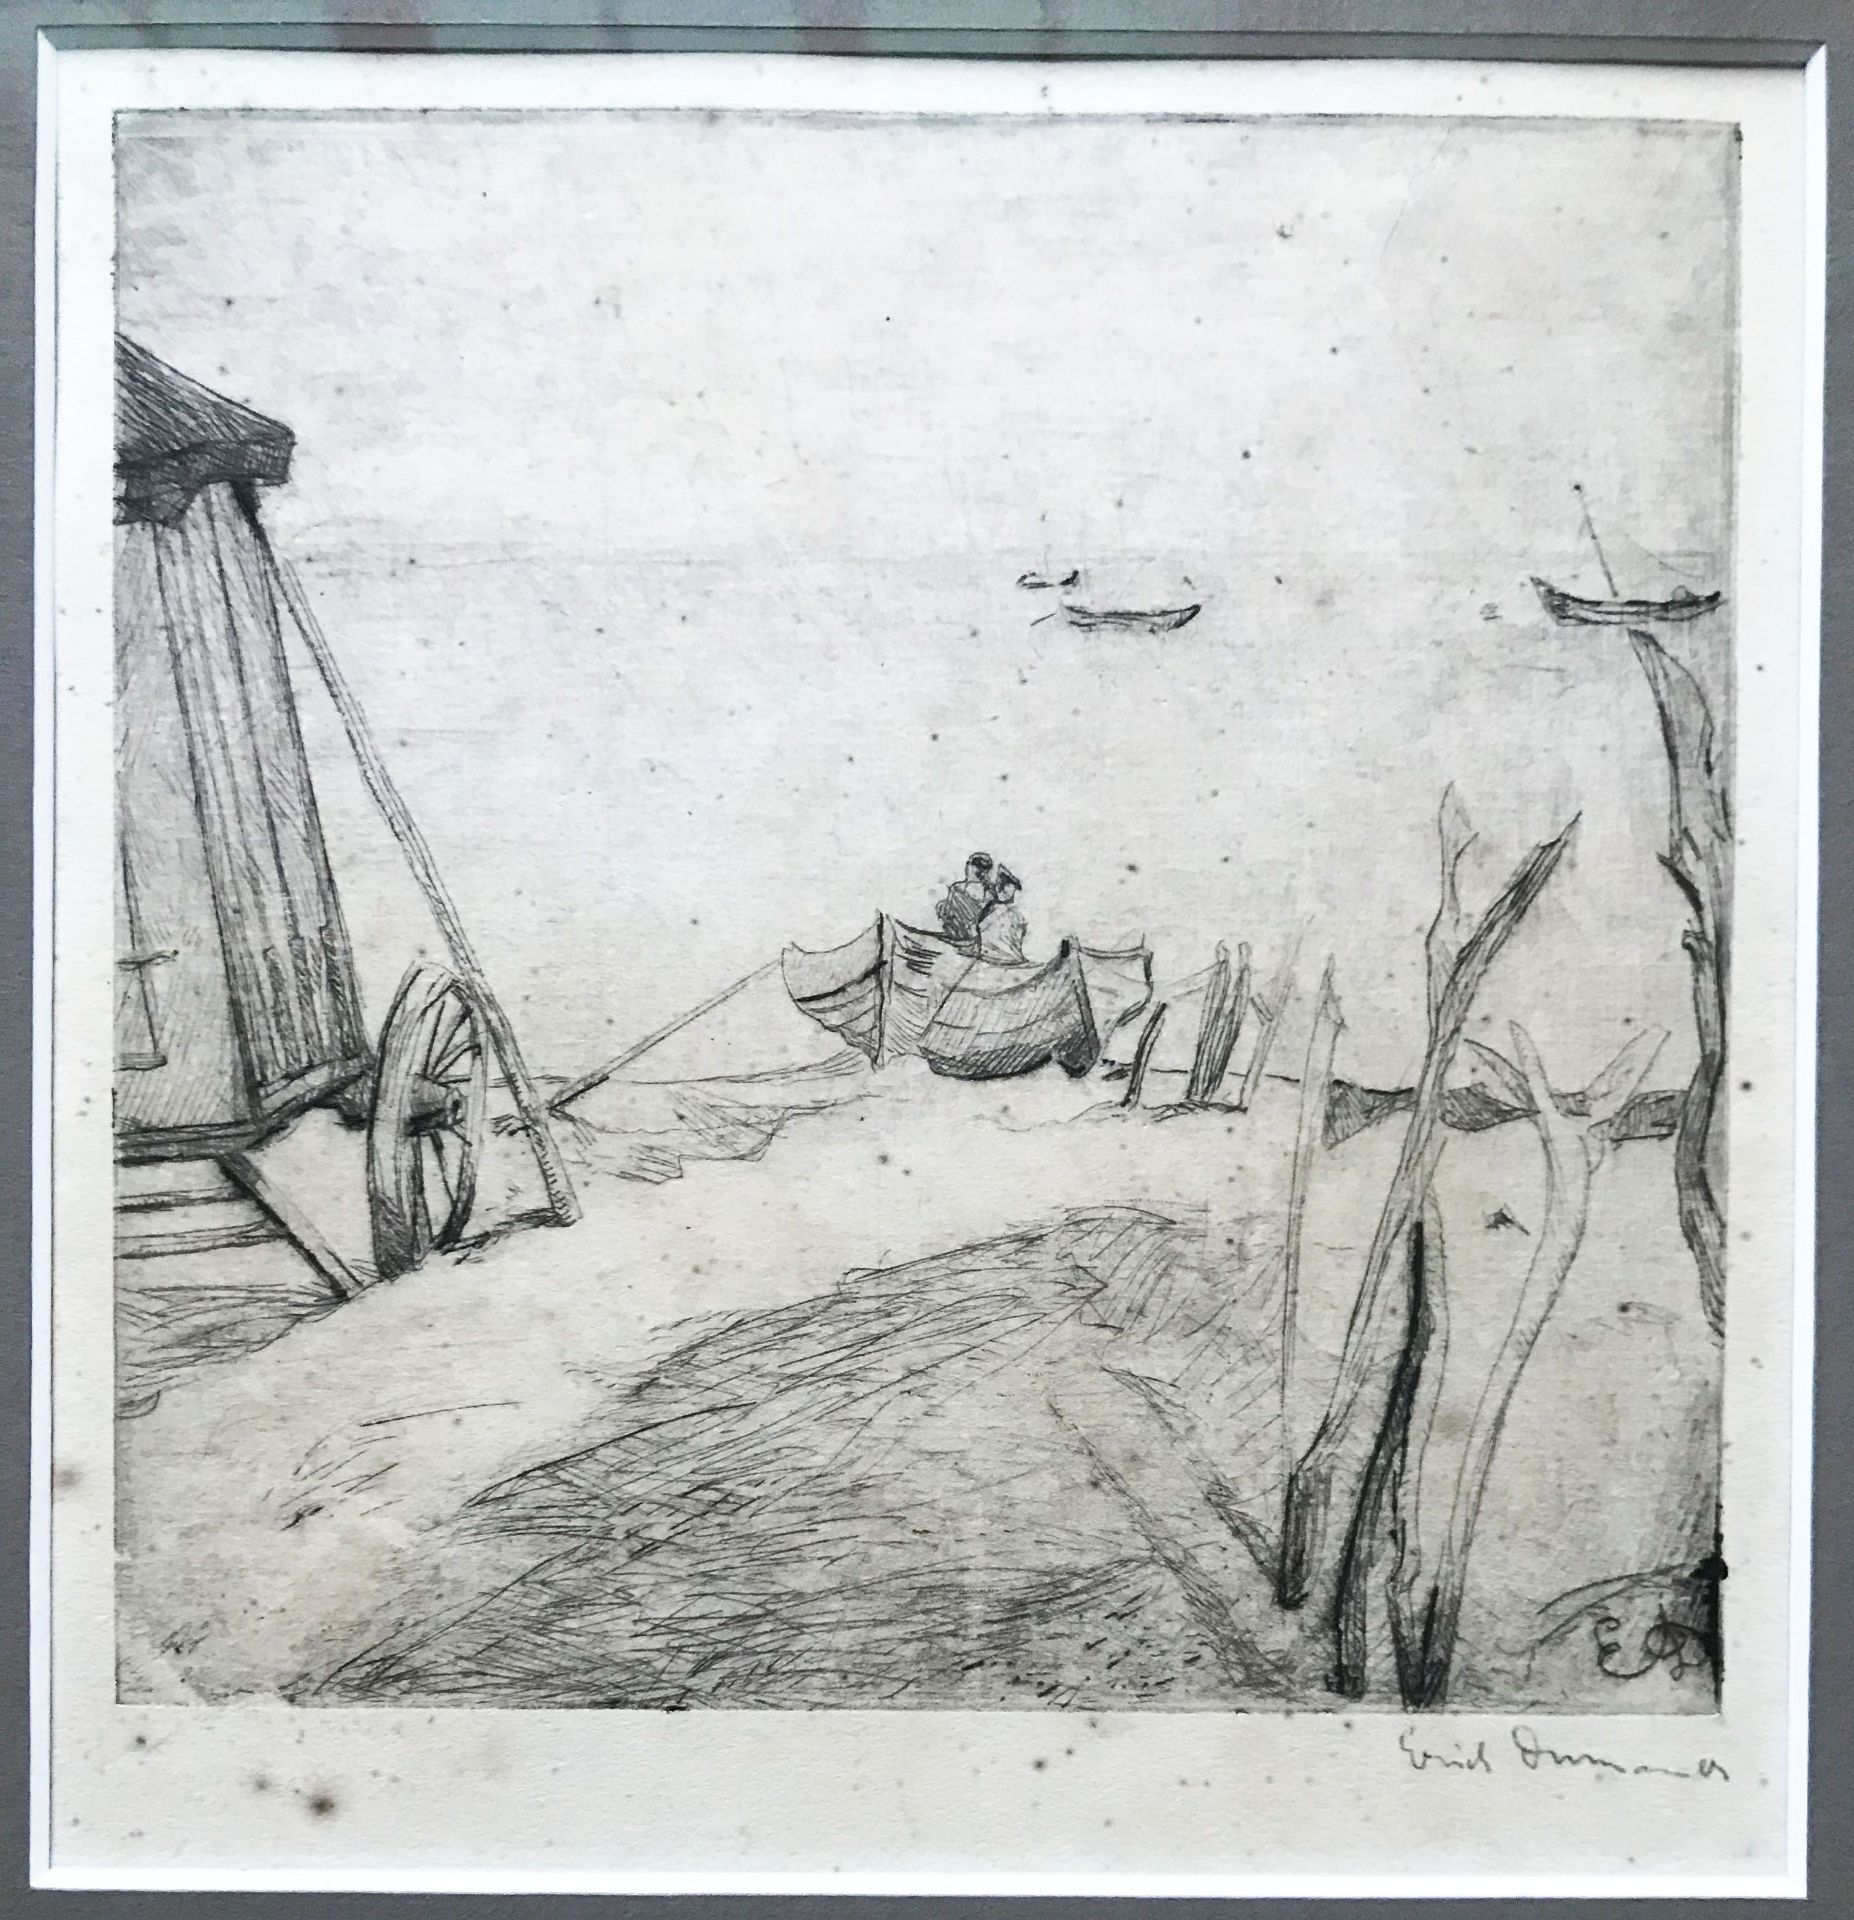 Erich Dummer (1889-1929, Lübecker Künstler), Strandszene mit Badekarren und Booten, ca. 1921/22, mon